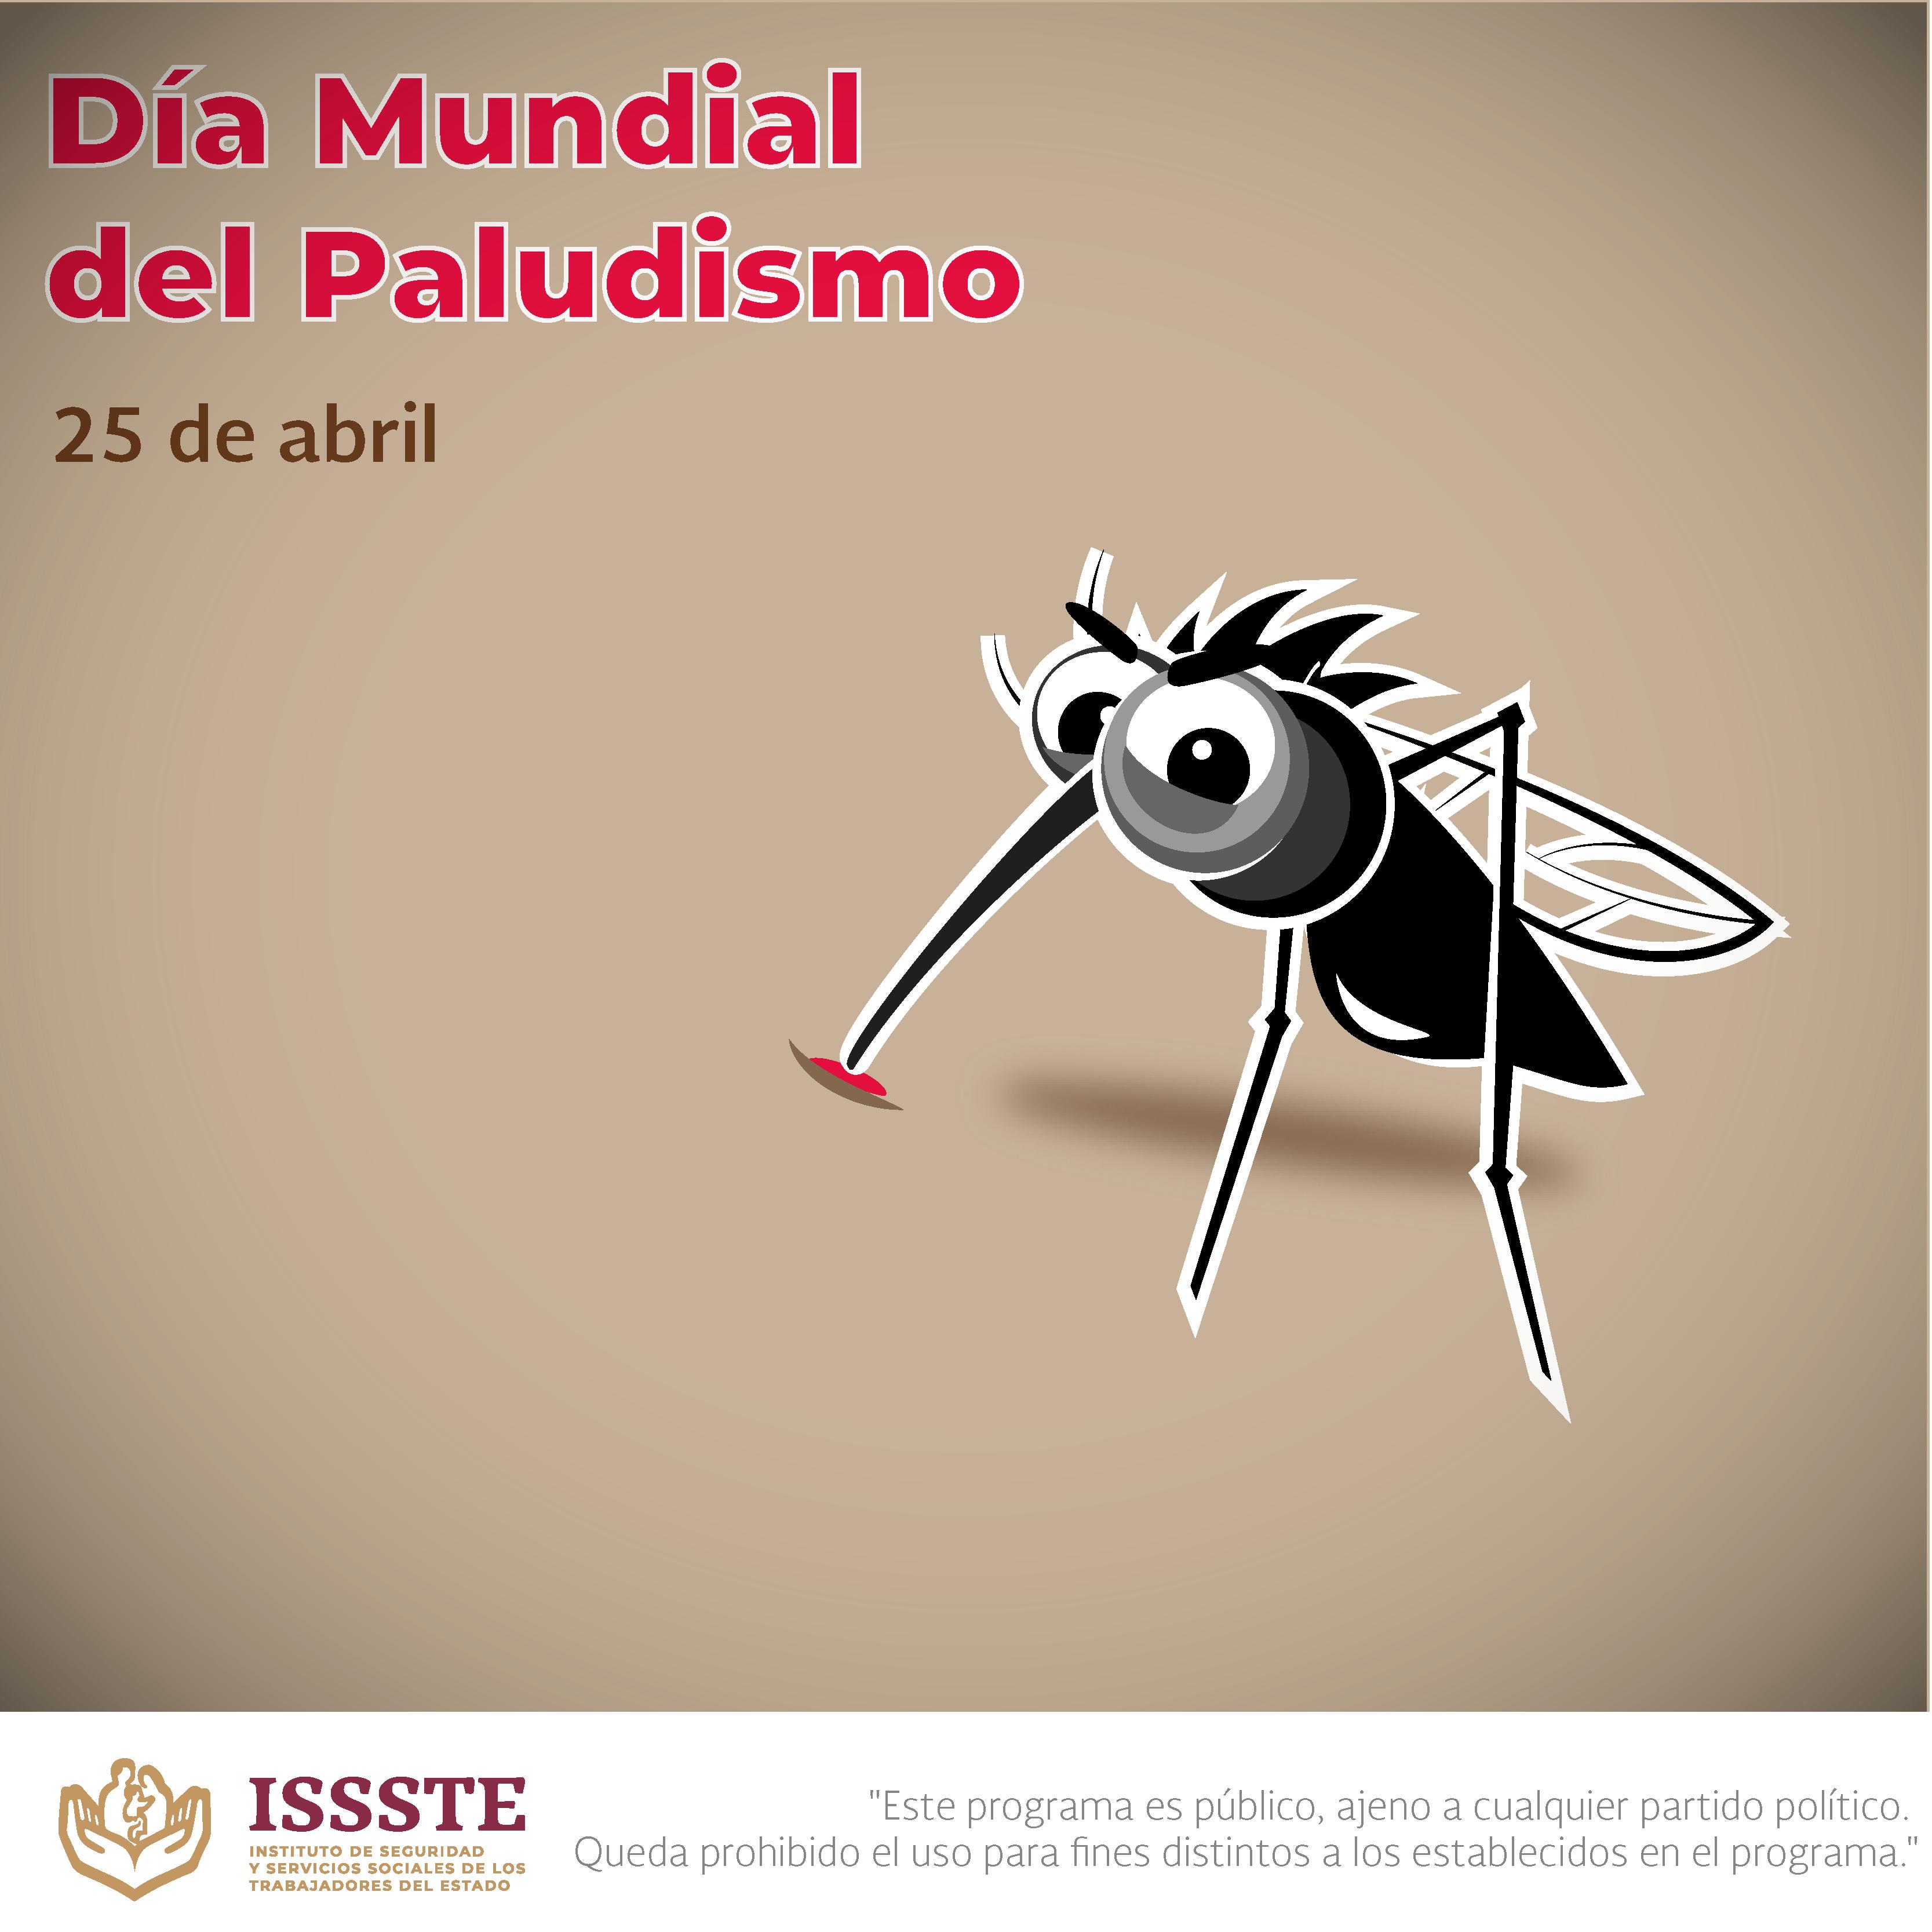 ISSSTE on Twitter: "Hoy conmemoramos el Día Mundial del #Paludismo, o  también llamado "#Malaria". Es una enfermedad causada por parásitos que se  transmiten al ser humano por la picadura de mosquitos 🦟;